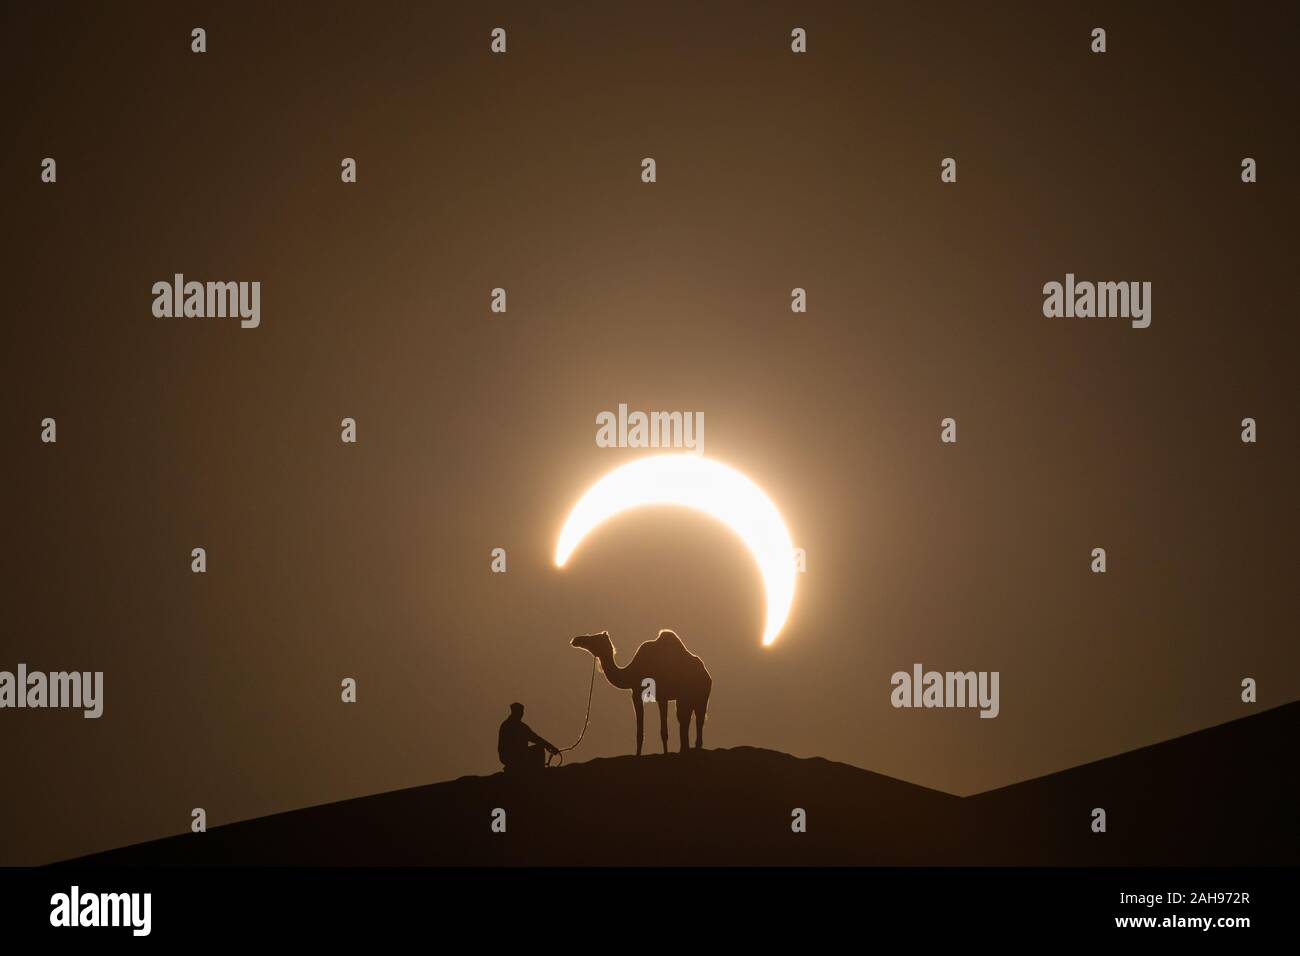 Anulare eclissi solare nel deserto con la silhouette di un cammello dromedario. Liwa desert, Abu Dhabi Emirati Arabi Uniti. Foto Stock